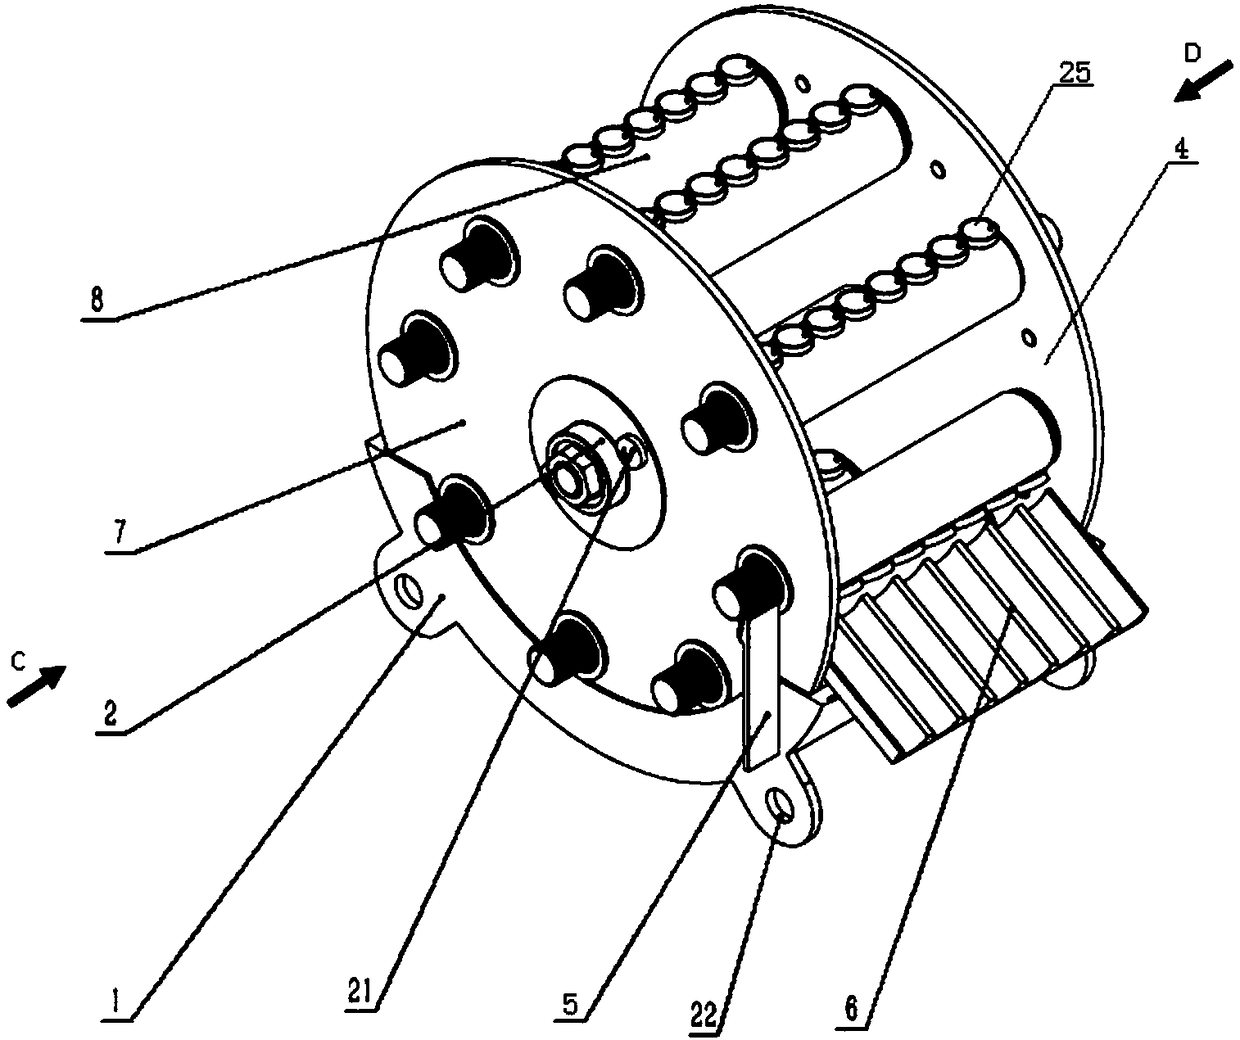 Waterwheel type single-seed precise seed-metering device